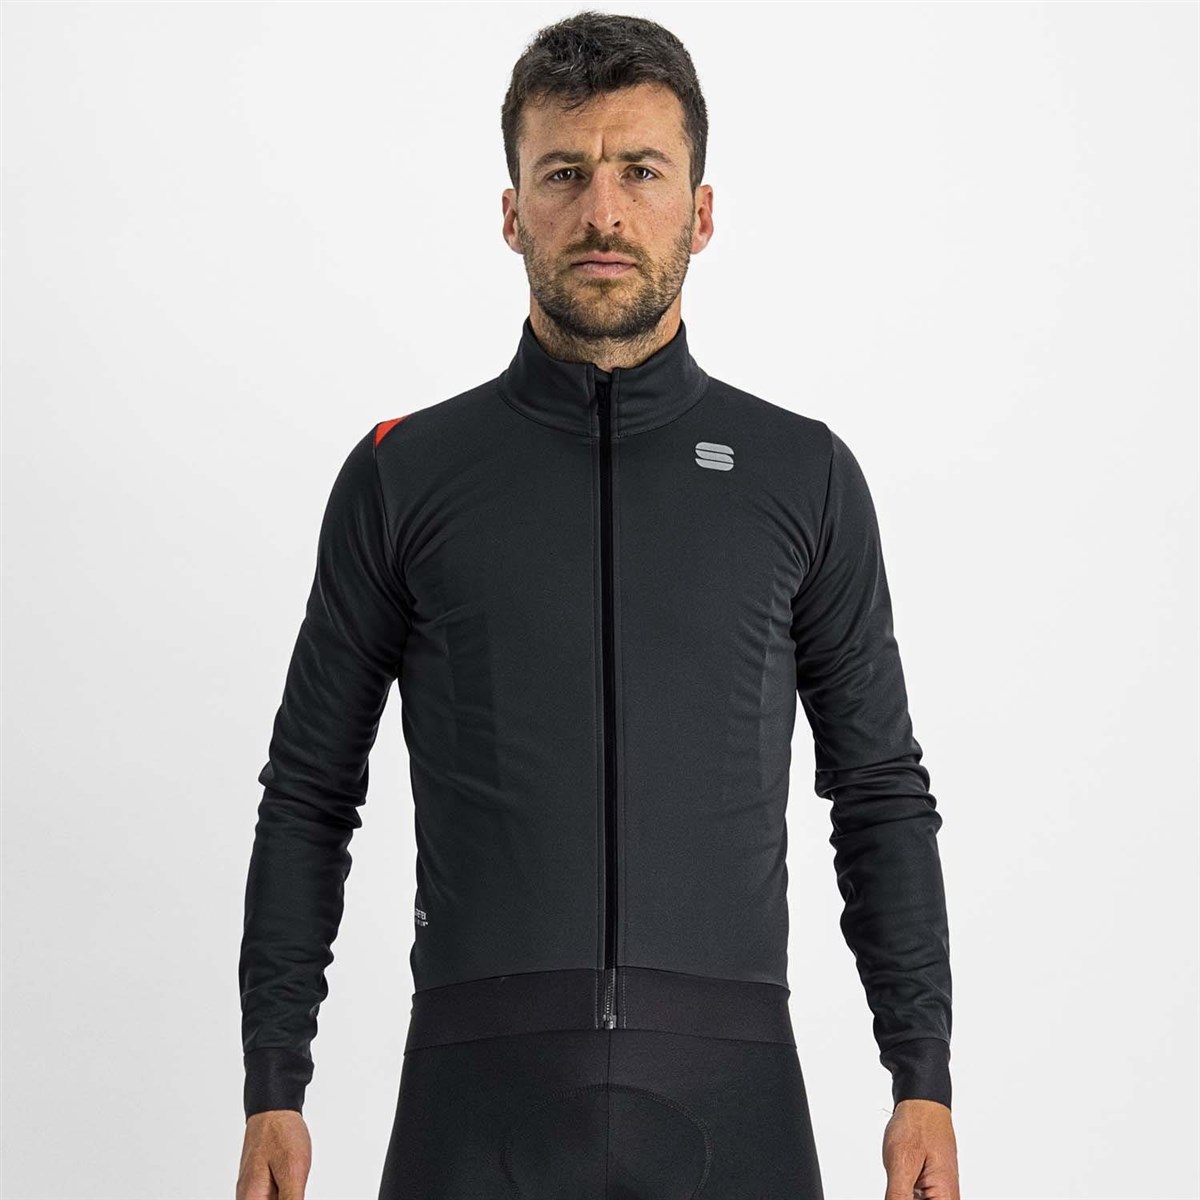 Sportful Fiandre Medium Long Sleeve Cycling Jacket product image